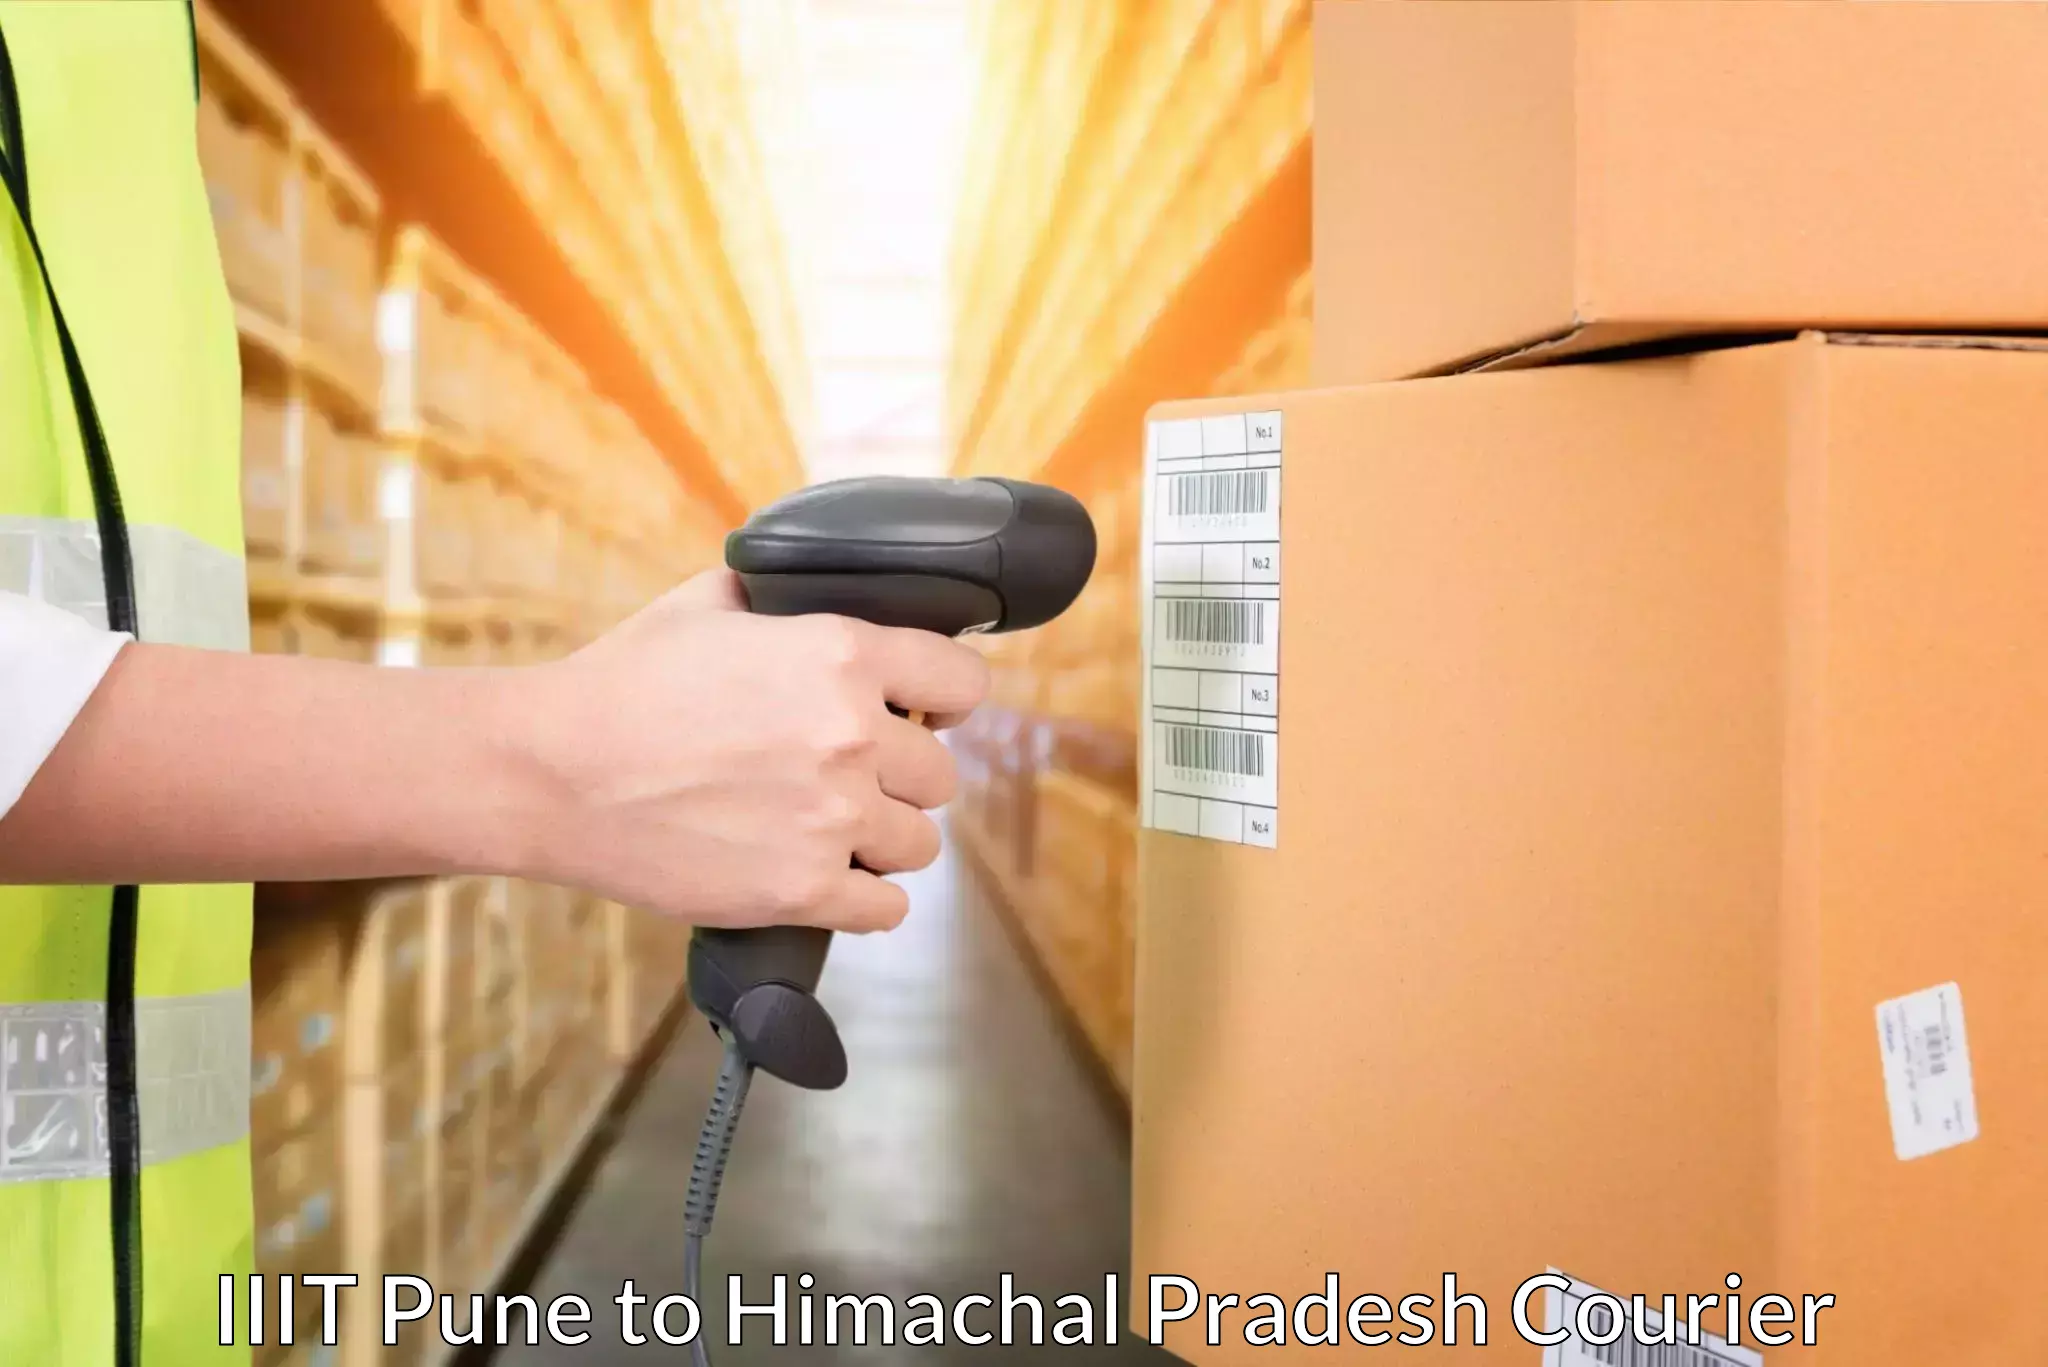 Package tracking IIIT Pune to Himachal Pradesh